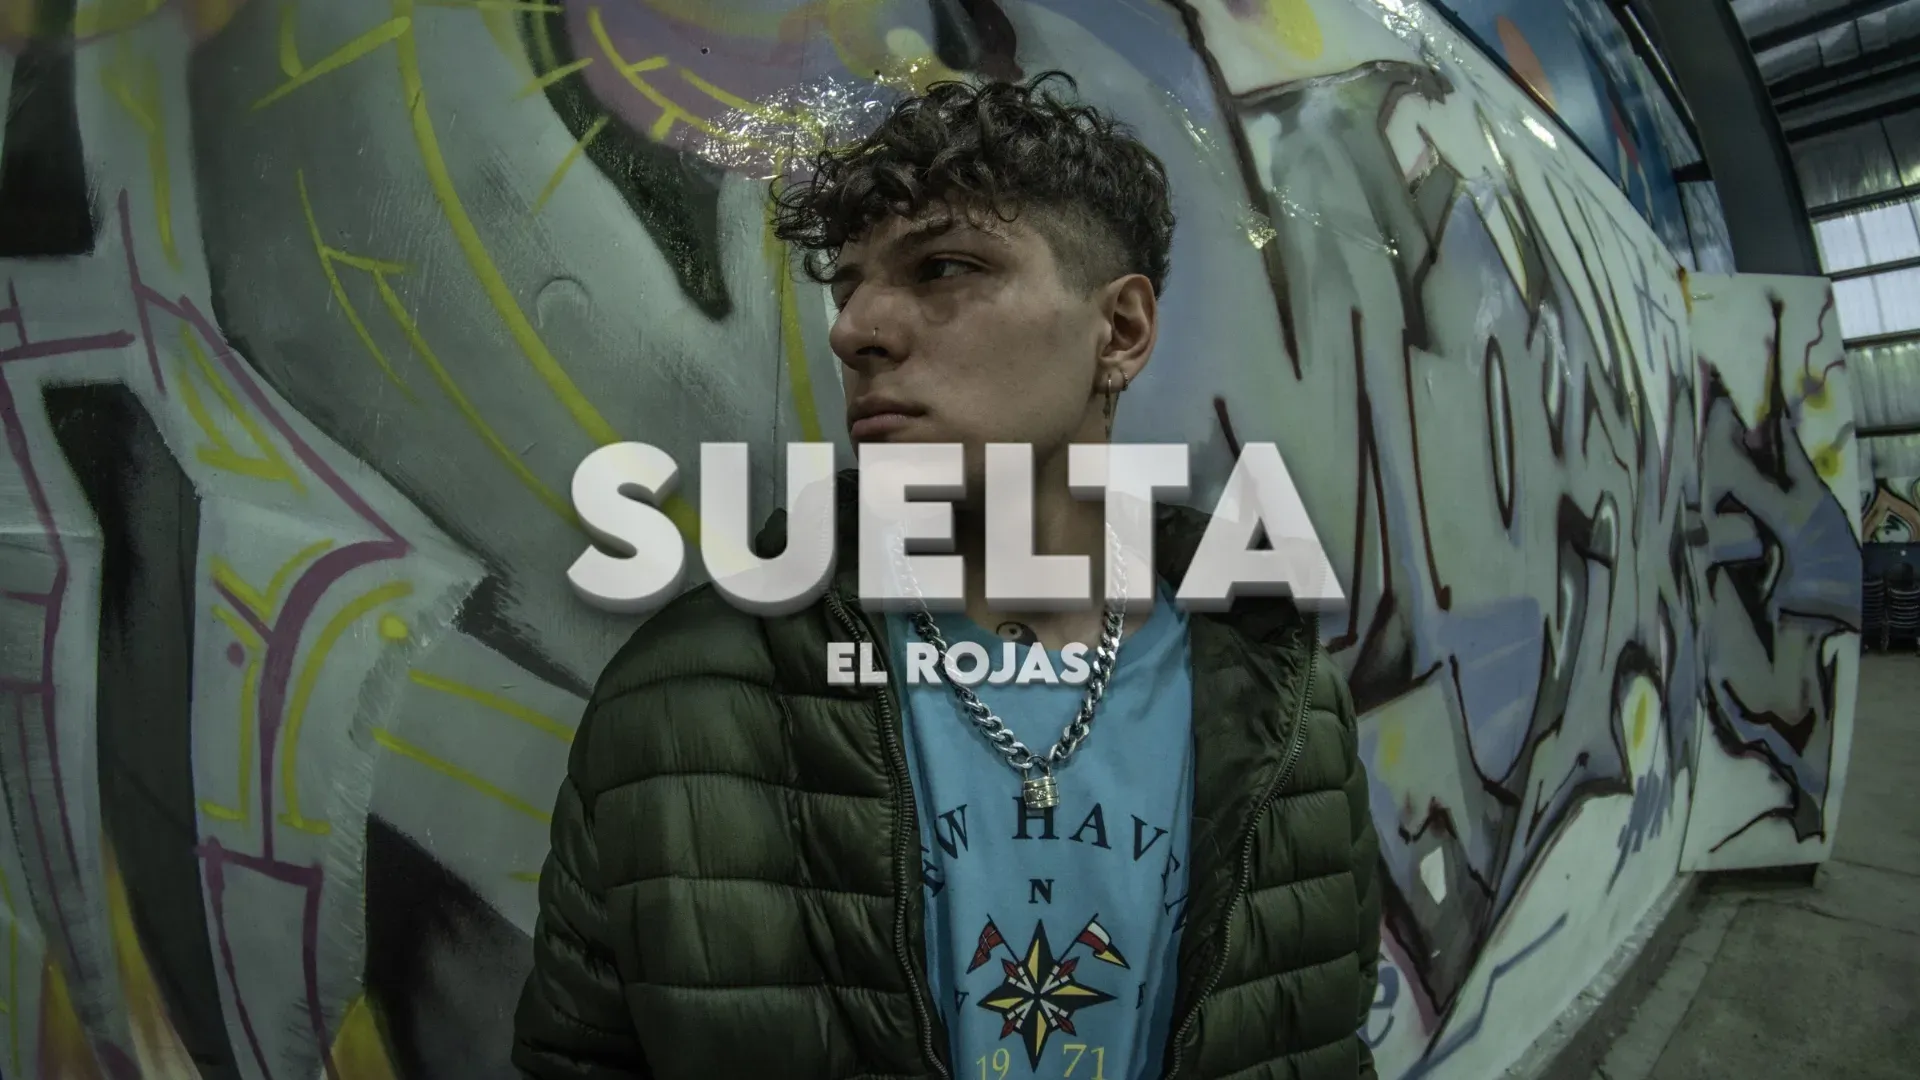 El artista morenense El Rojas presentó su nuevo tema "Suelta"